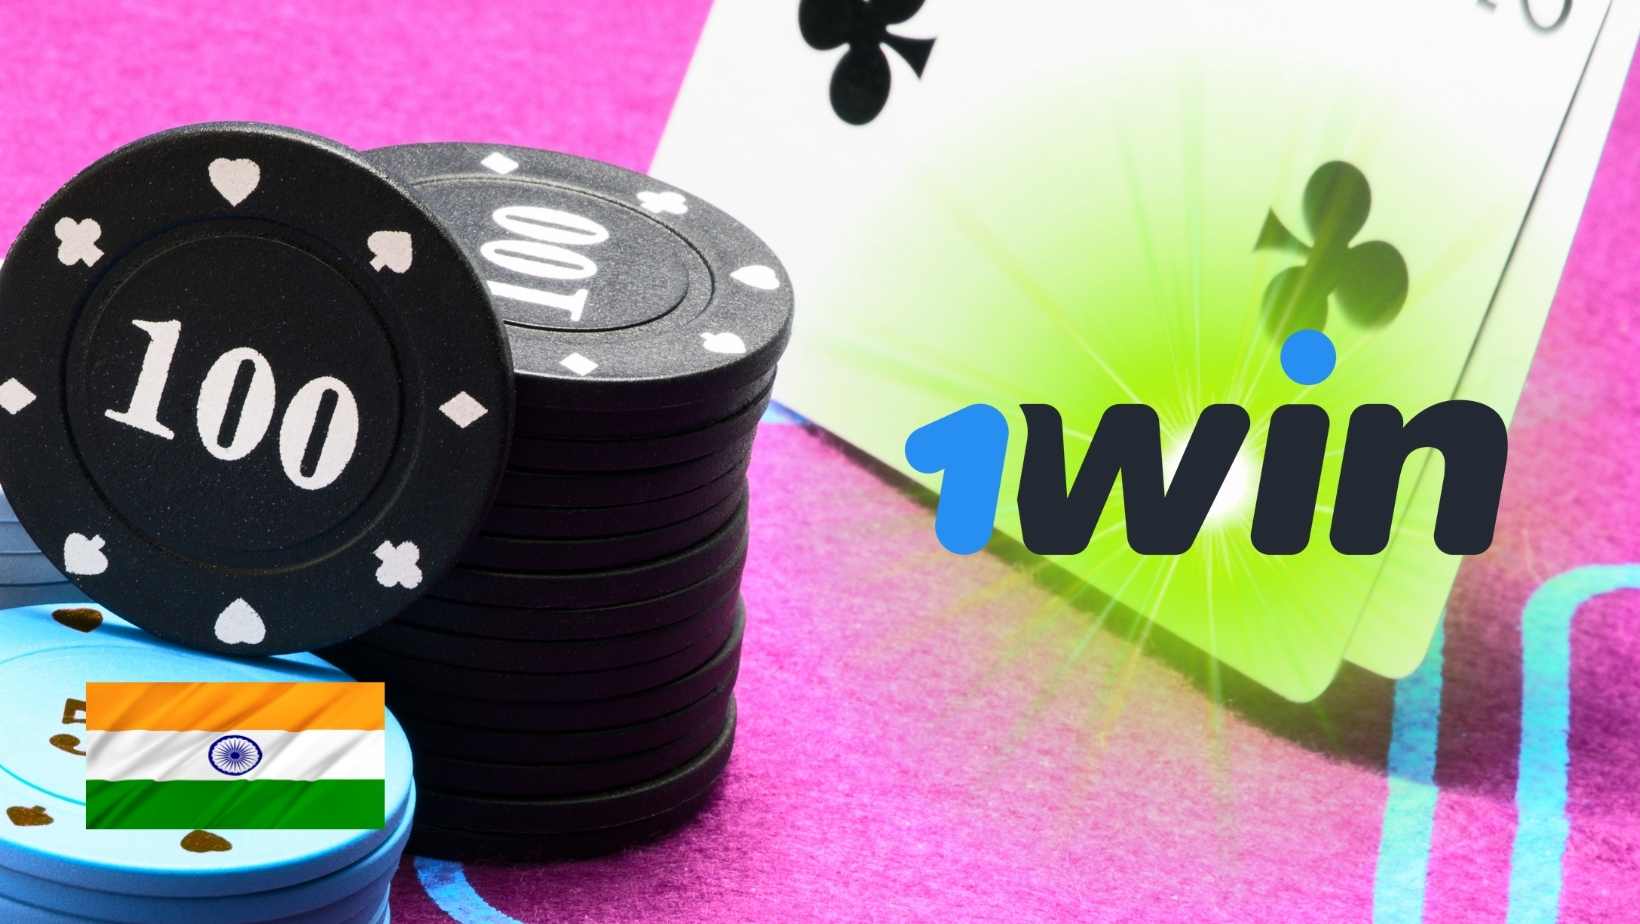 Poker game of 1win platform